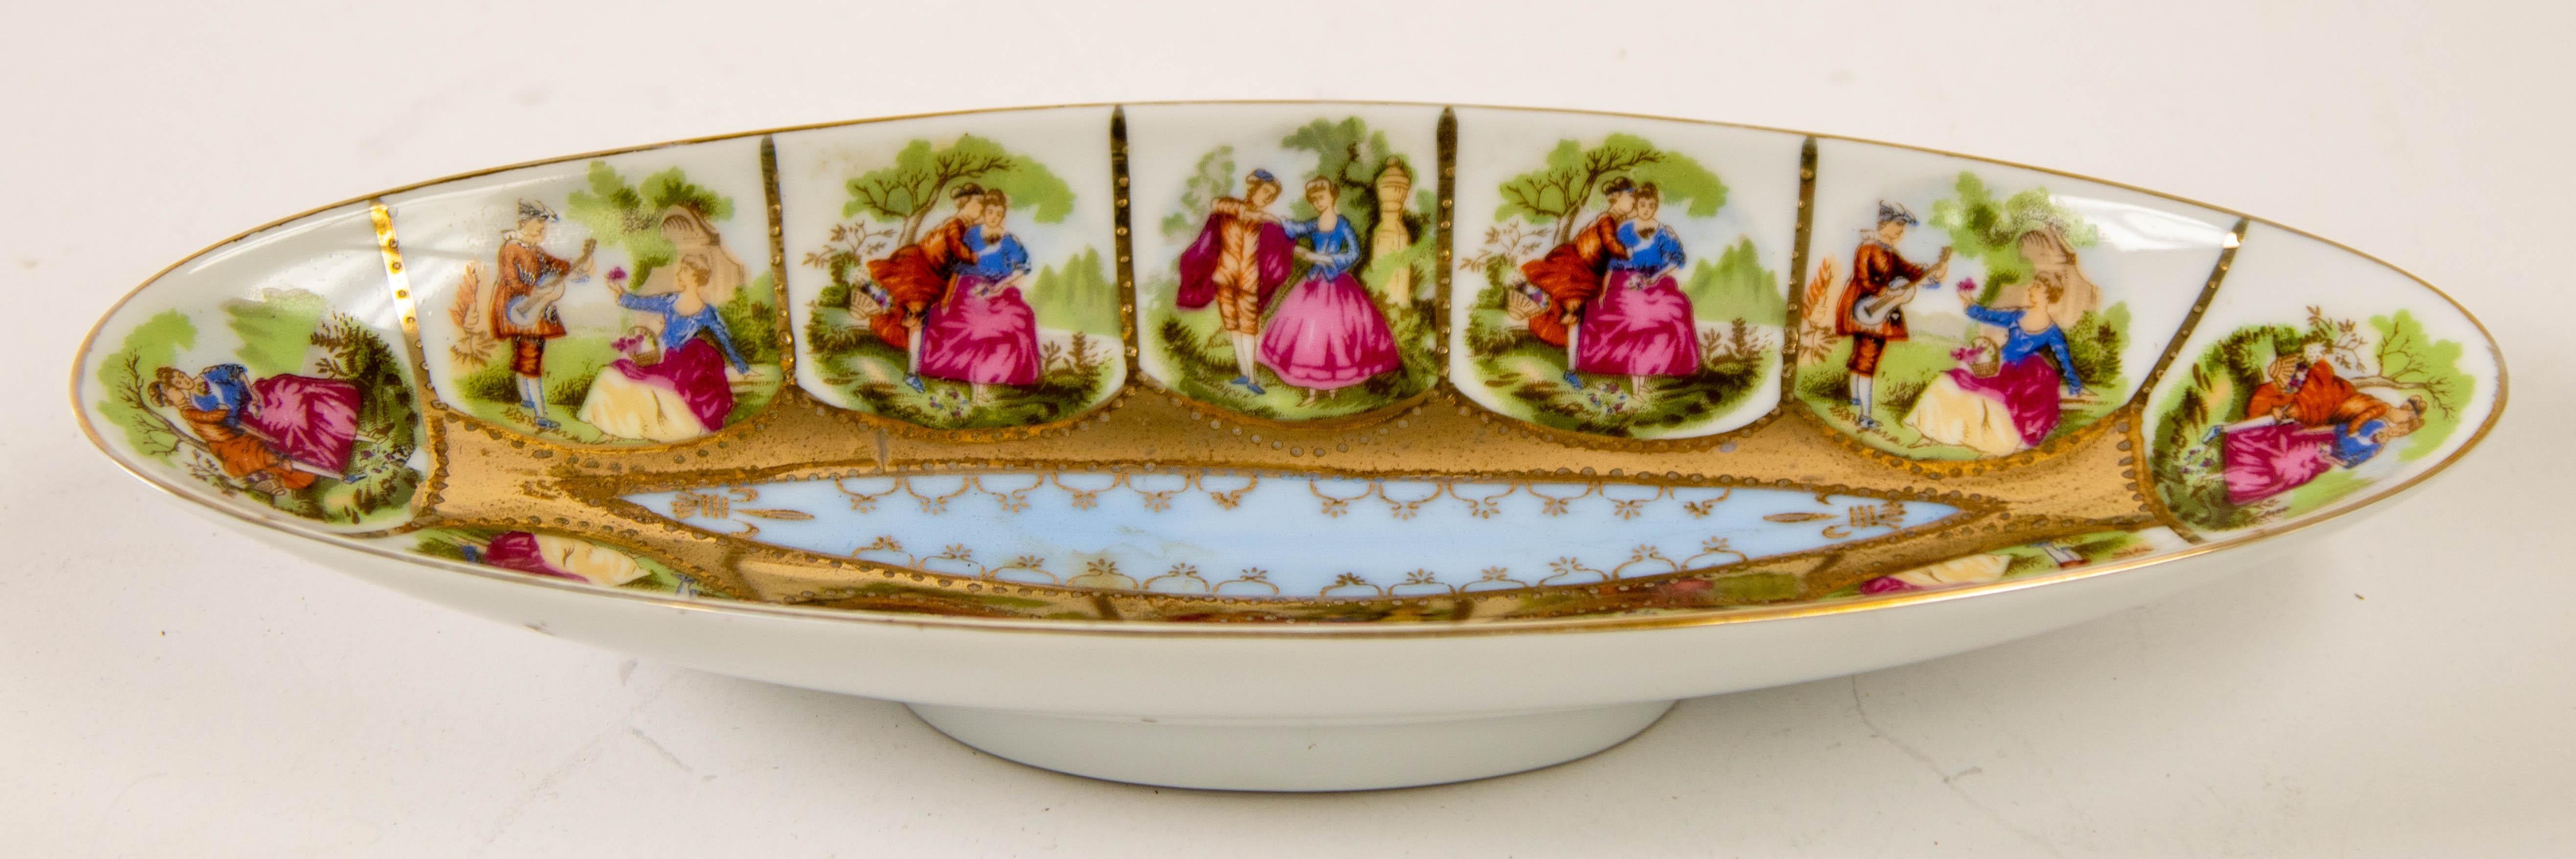 Wir präsentieren ein exquisites Royal Vienna Austria handbemaltes ovales Porzellantablett aus der Zeit um 1940.
Diese Schale hat eine längliche Form, die mit opulenten Goldverzierungen versehen ist.
Der Rand dieses Tabletts ist mit sorgfältiger Hand